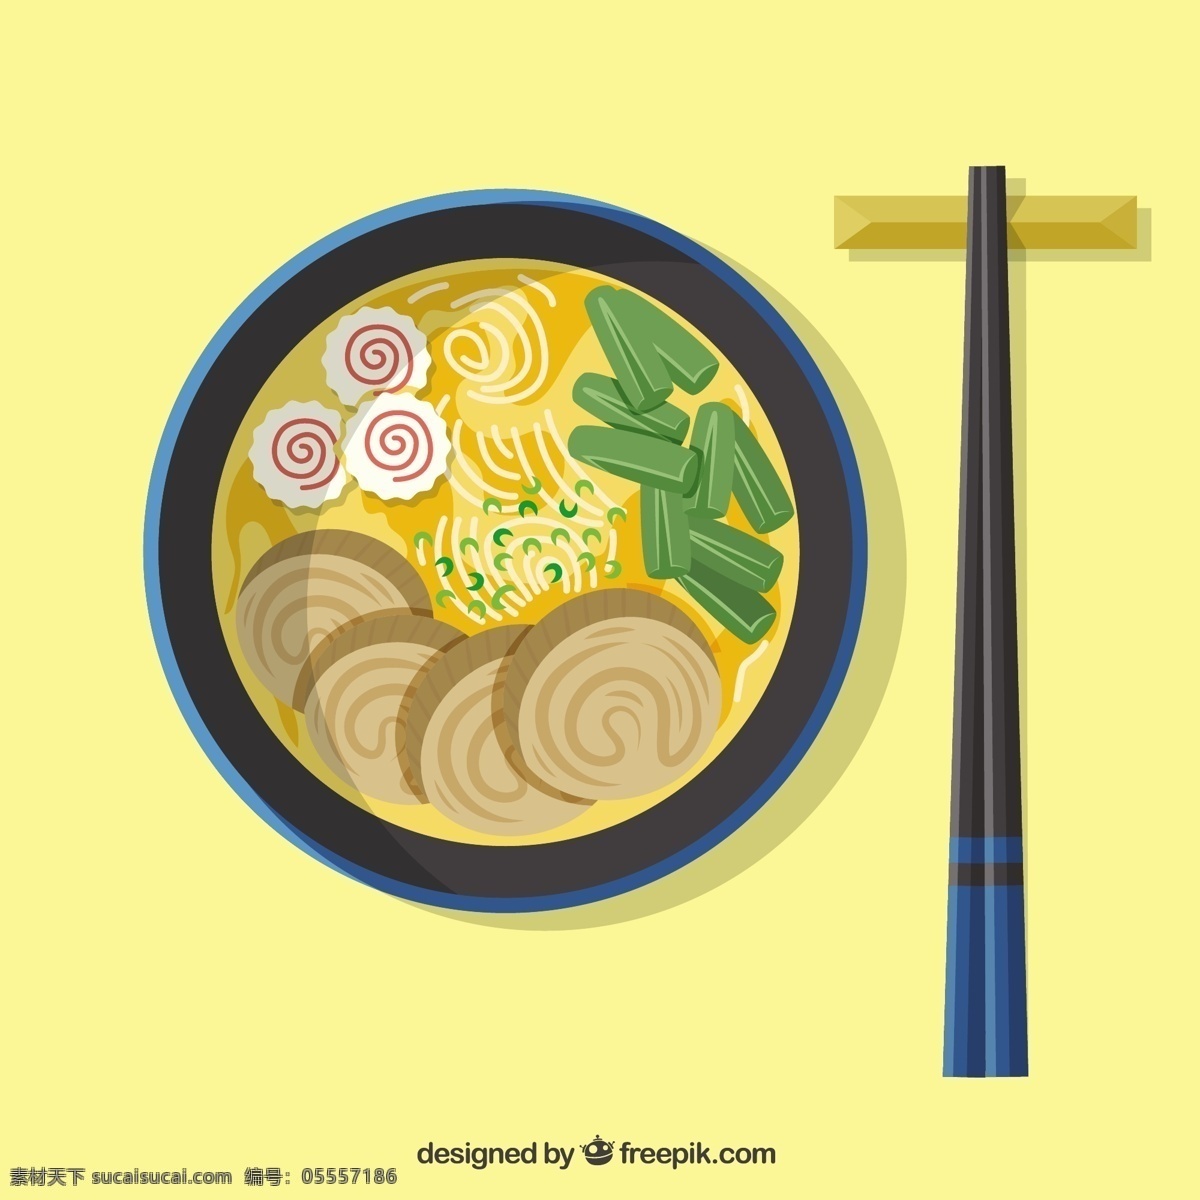 亚洲食品 食品 菜单 餐厅 厨房 厨师 餐桌 烹饪 寿司 餐厅菜单 米饭 日本人 晚餐 吃 东方 食物菜单 饮食 菜 餐具